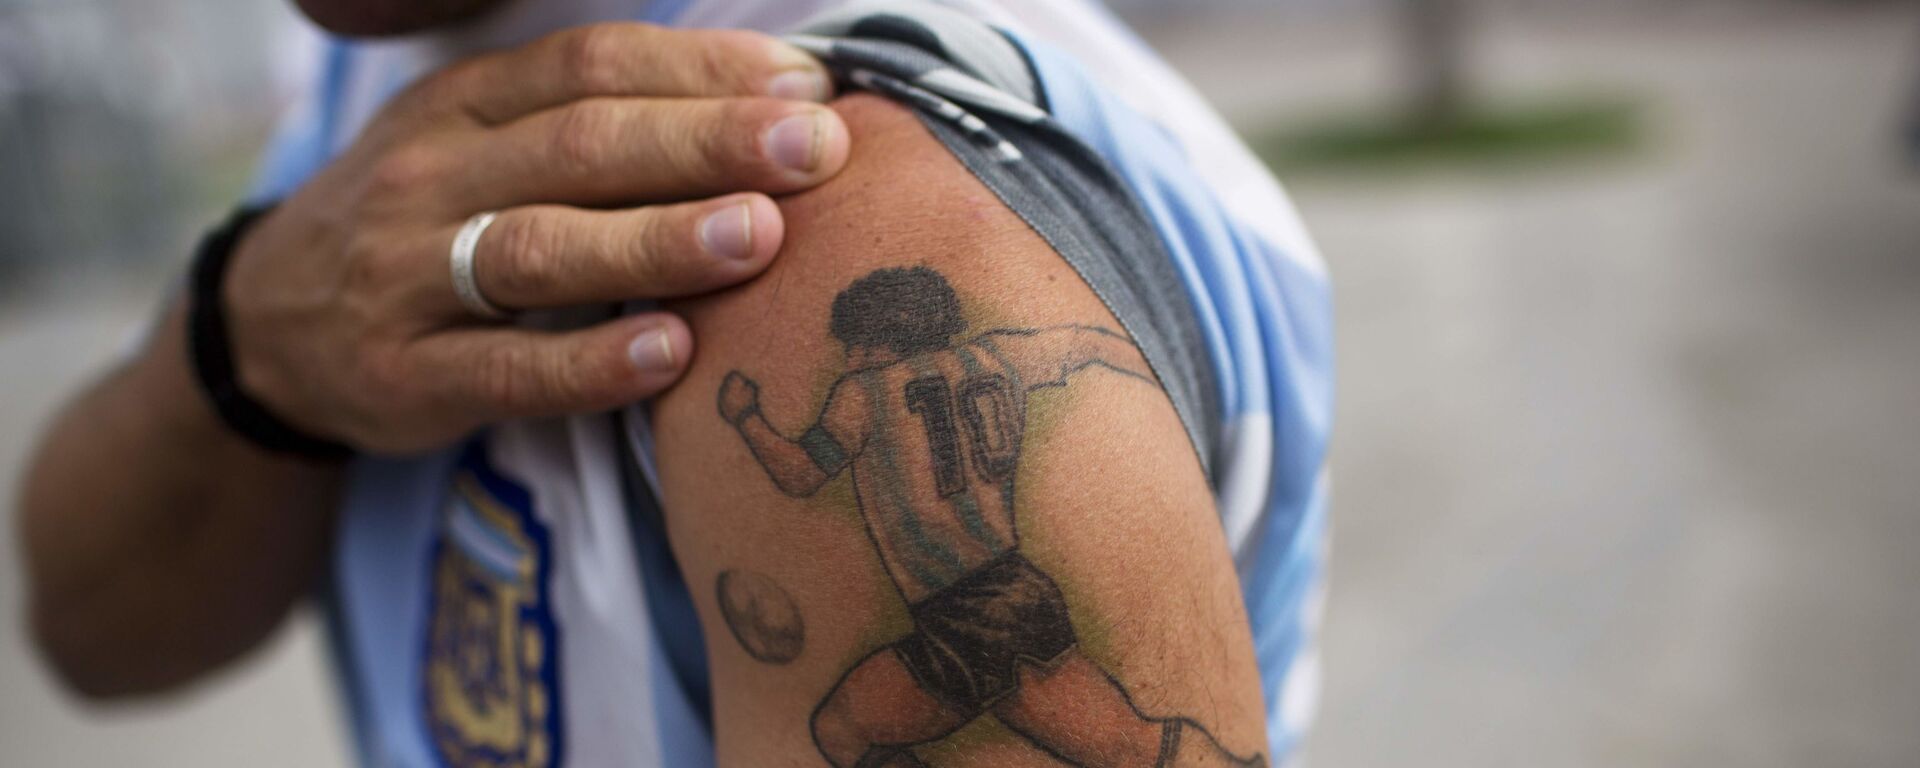 Болельщик с татуировкой на плече с изображением Диего Марадоны в Бразилии  - Sputnik Молдова, 1920, 26.11.2020